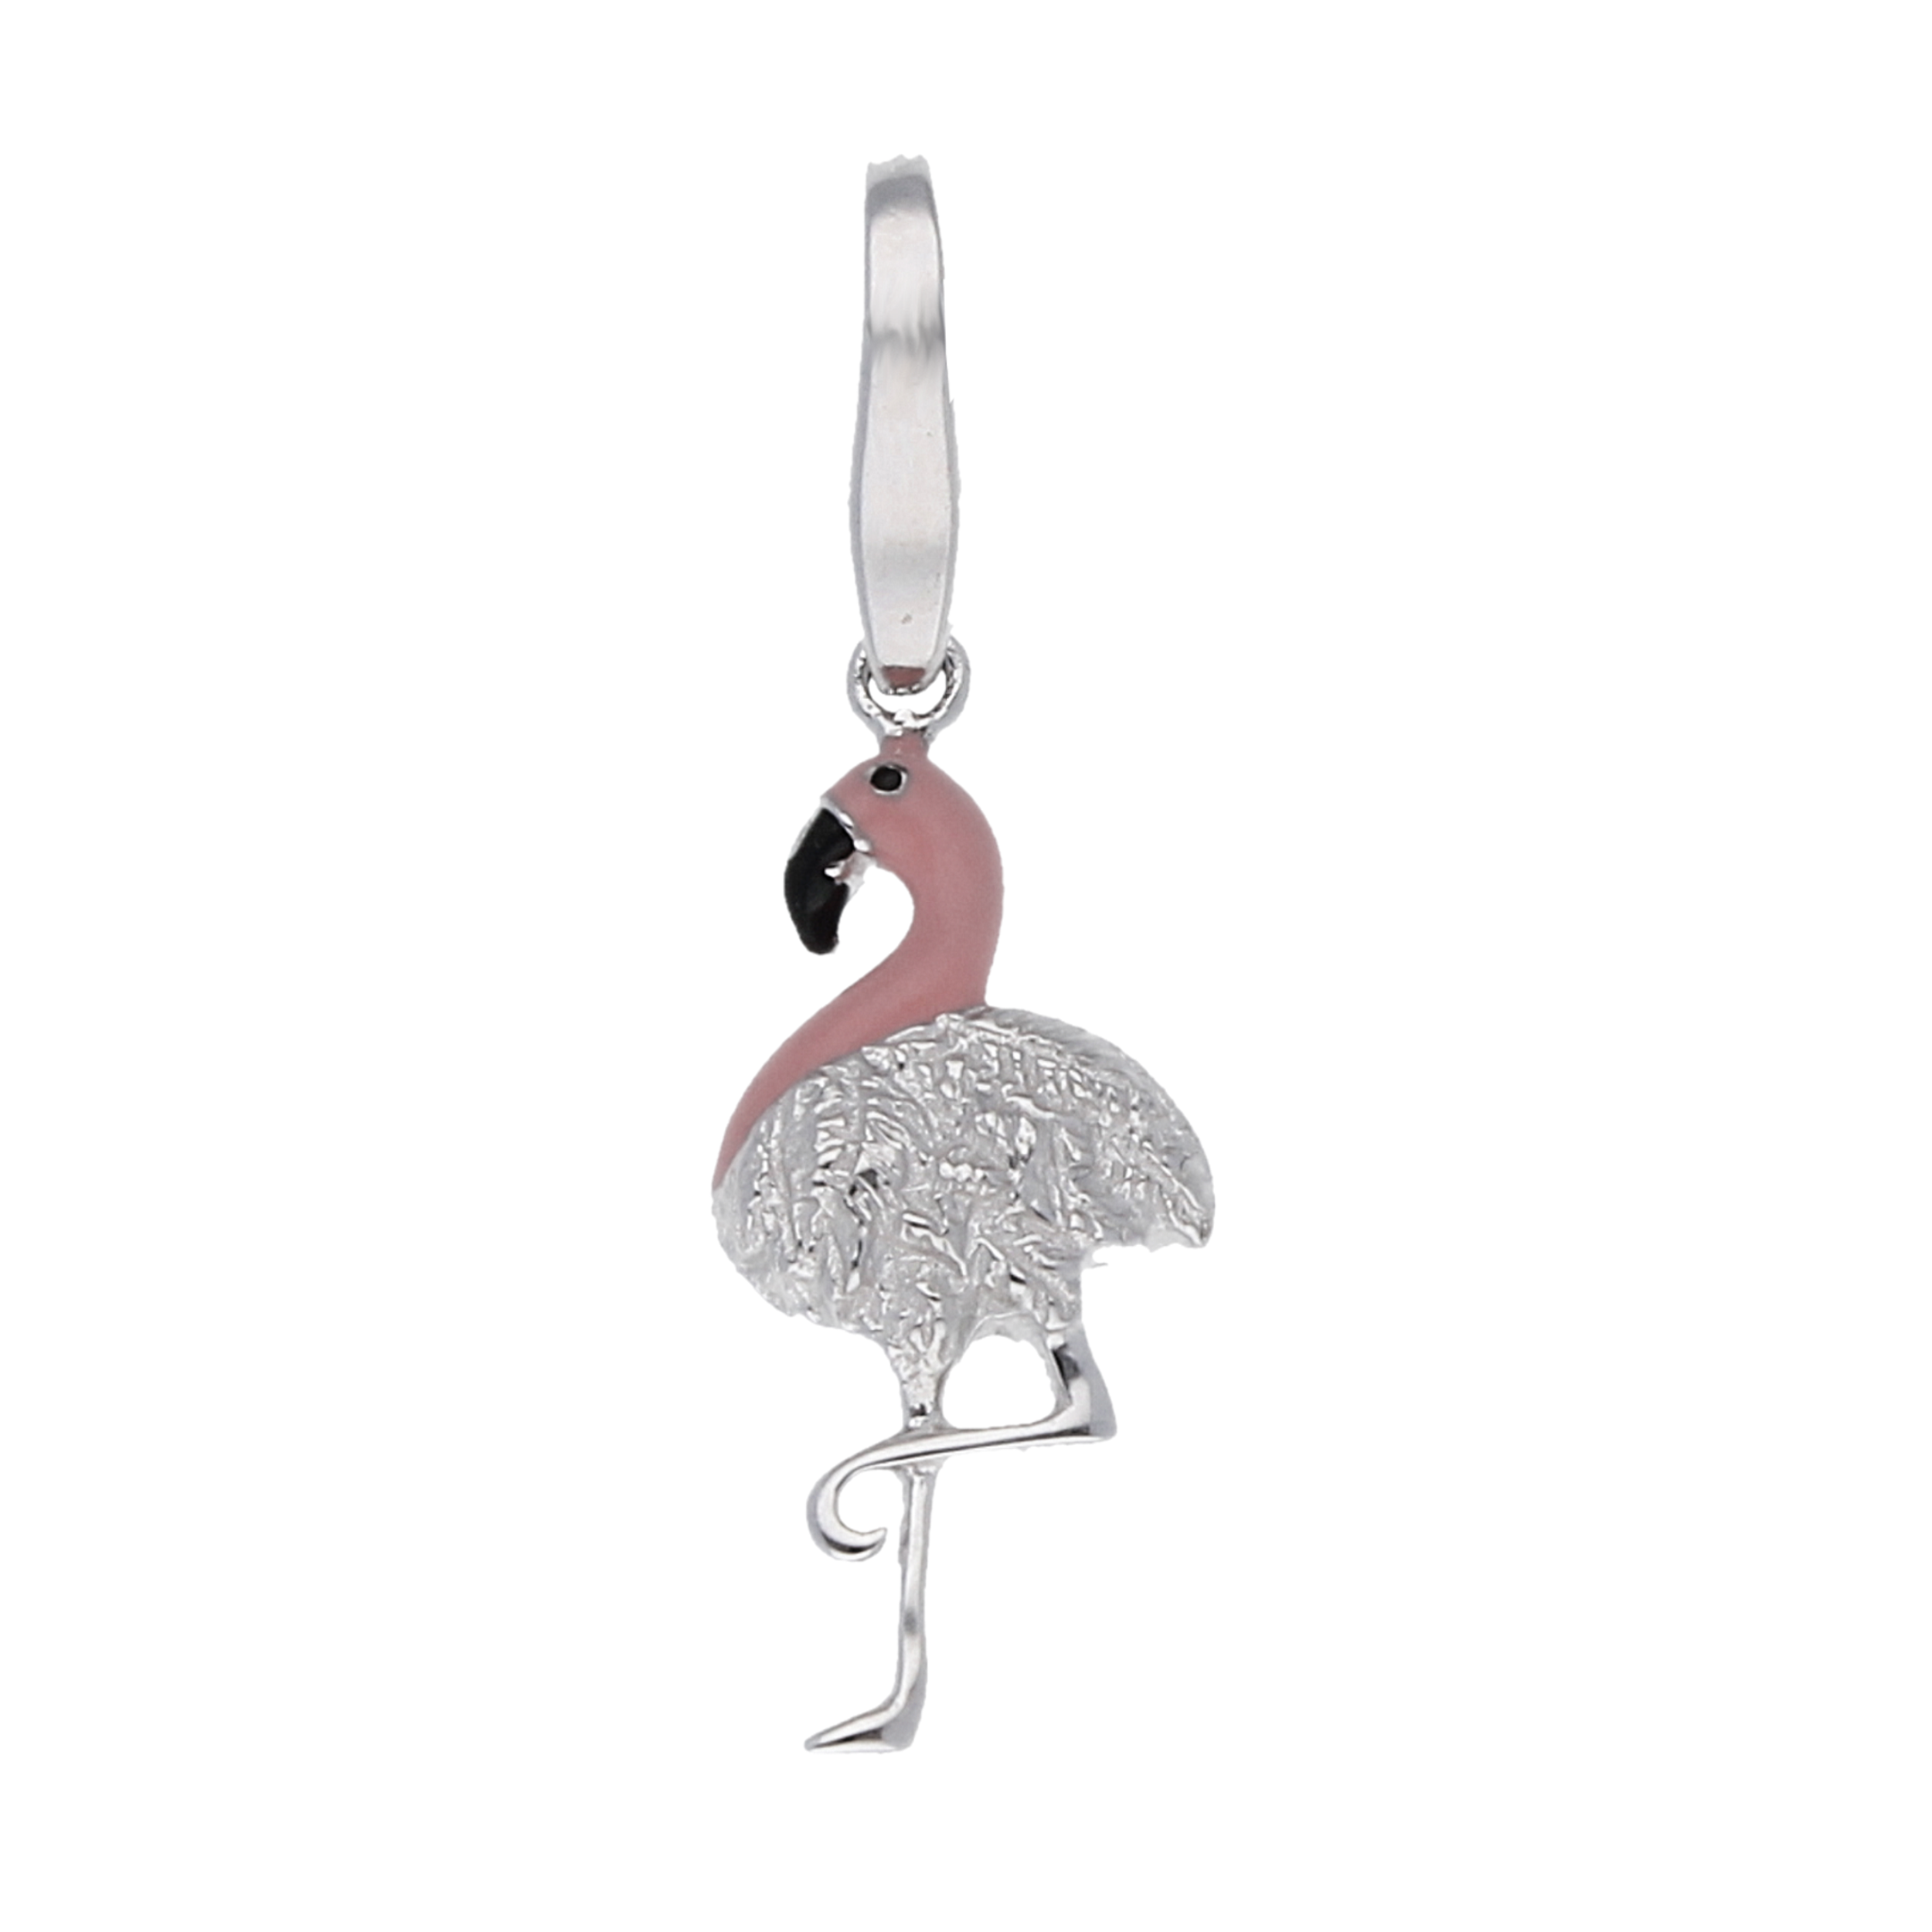 Giorgio Martello Lucky Charm Flamingo günstig kaufen bei Juwelierwelt.de © ★ Gratisversand ★ Paypal ★ trusted shops ★ 